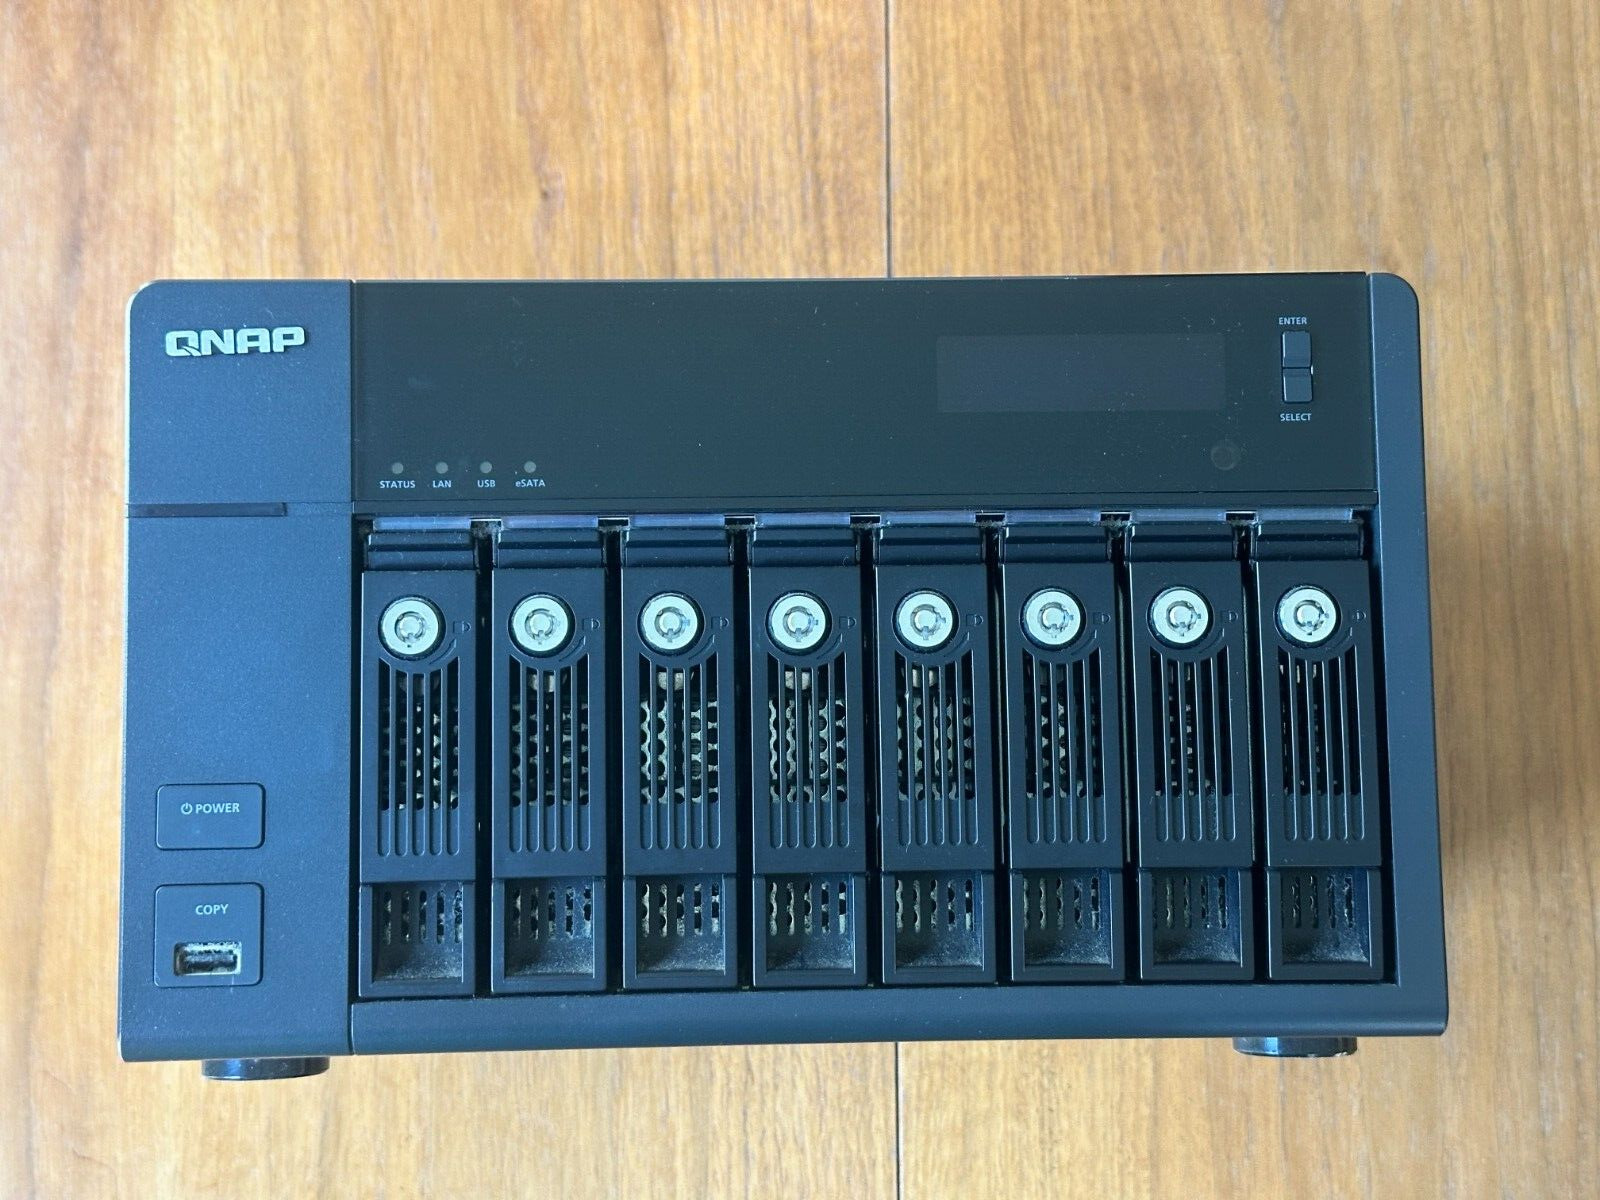 QNAP TS-869 Pro w/ 24 TB storage (8x WD Red NAS drives)